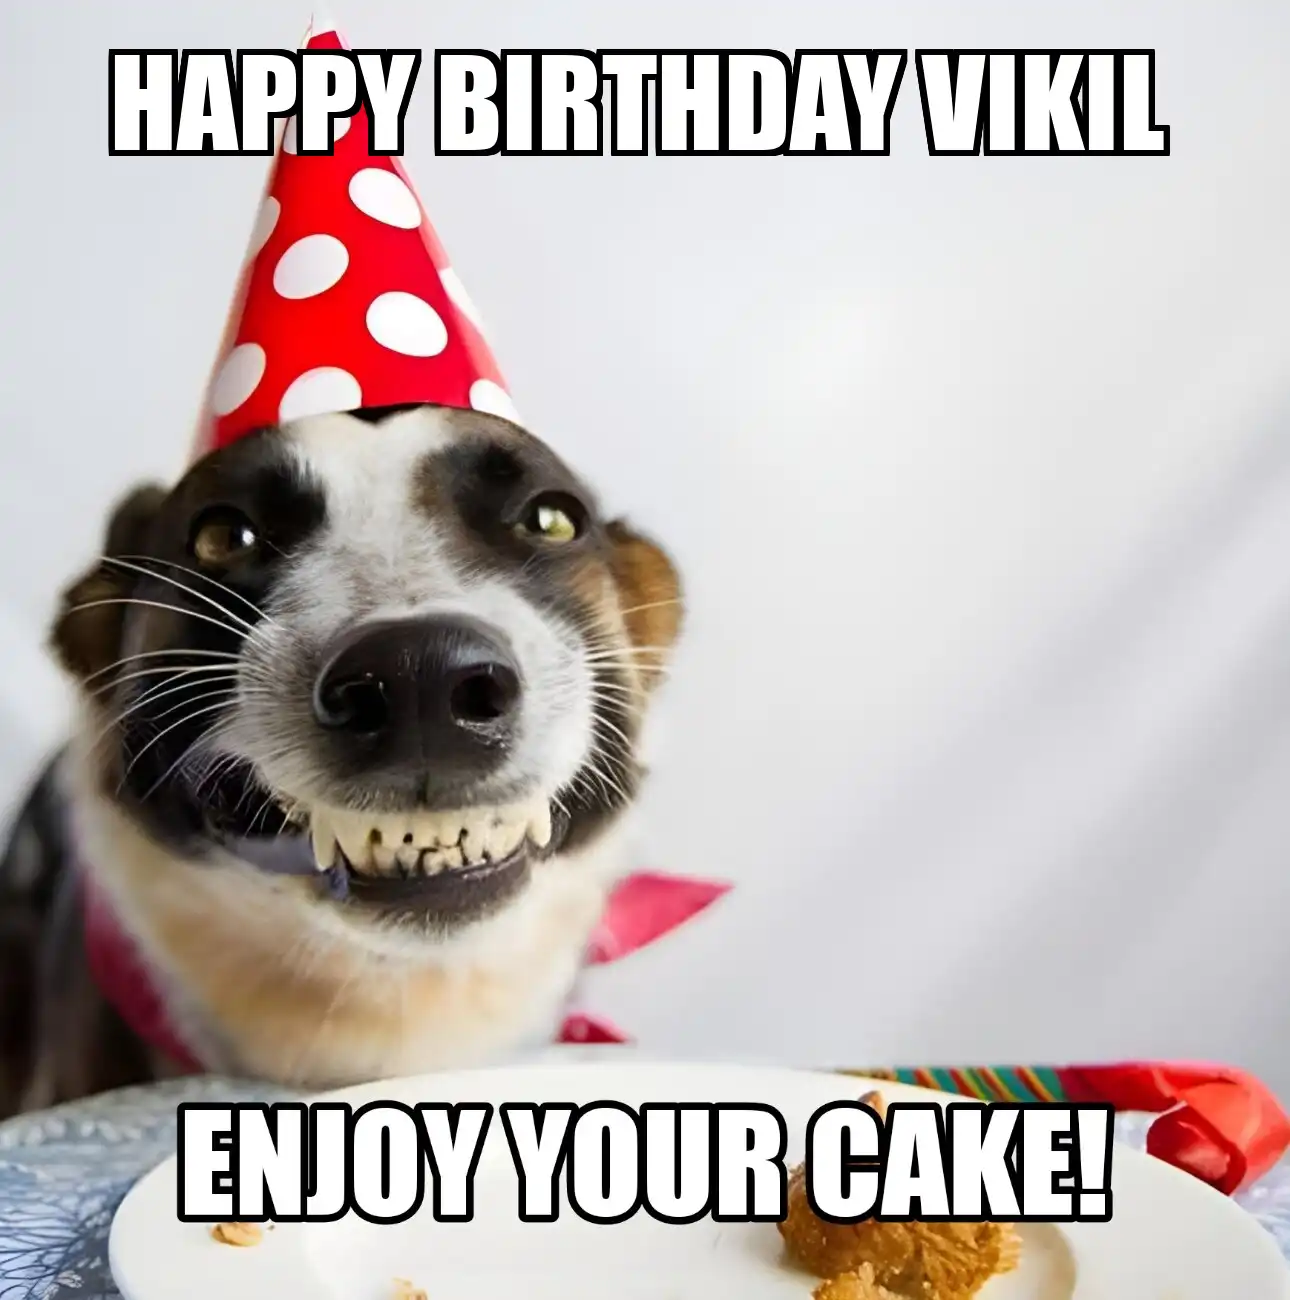 Happy Birthday Vikil Enjoy Your Cake Dog Meme